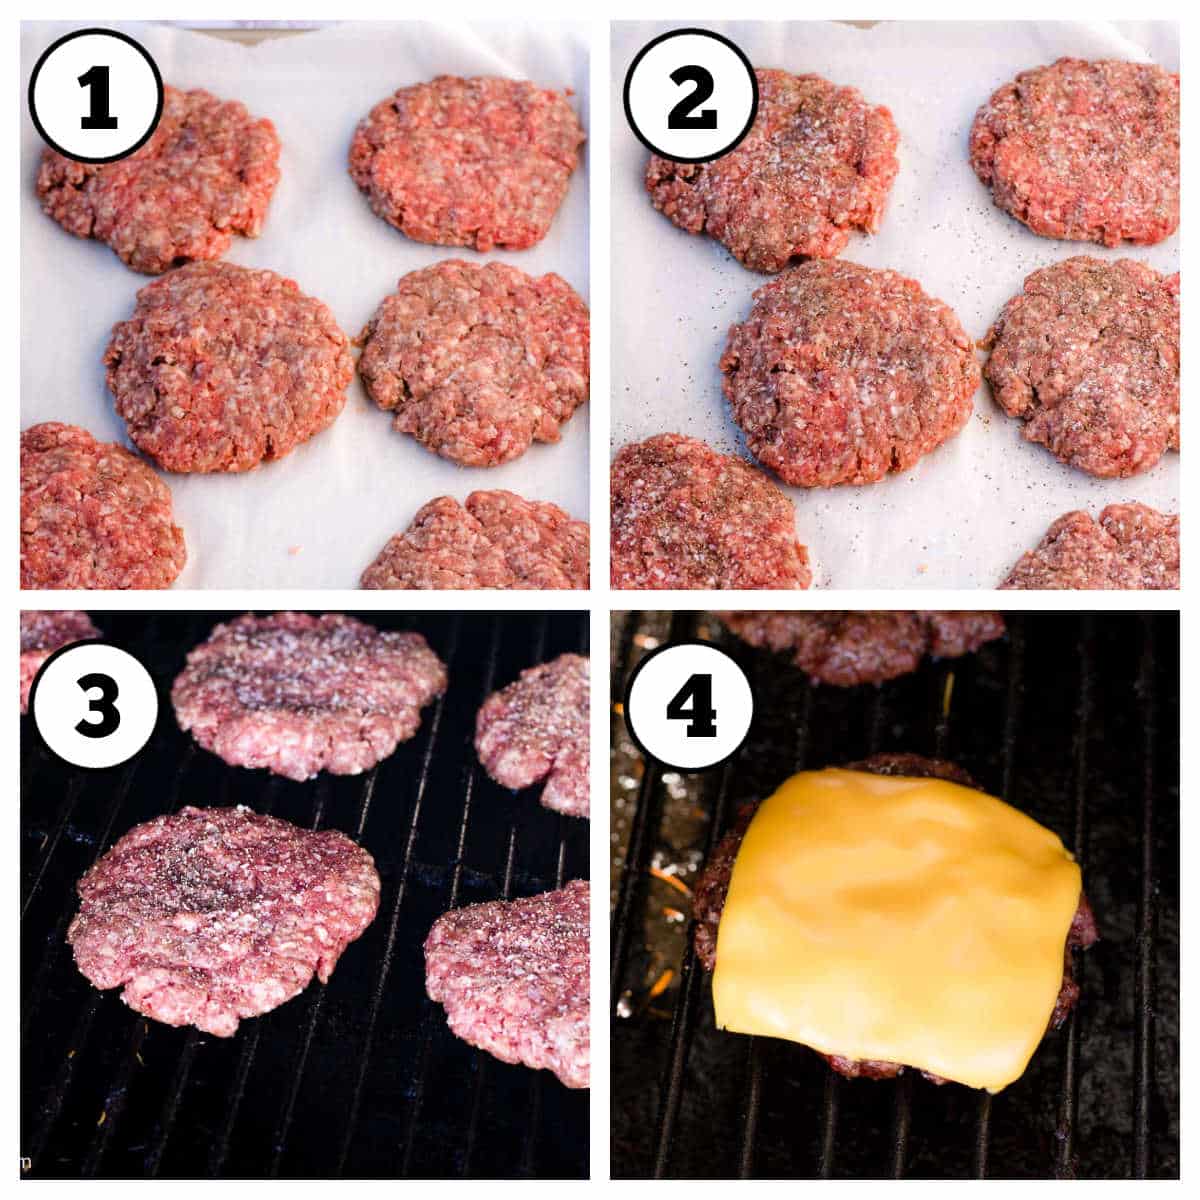 Steps 1-4 to make smoked burgers.